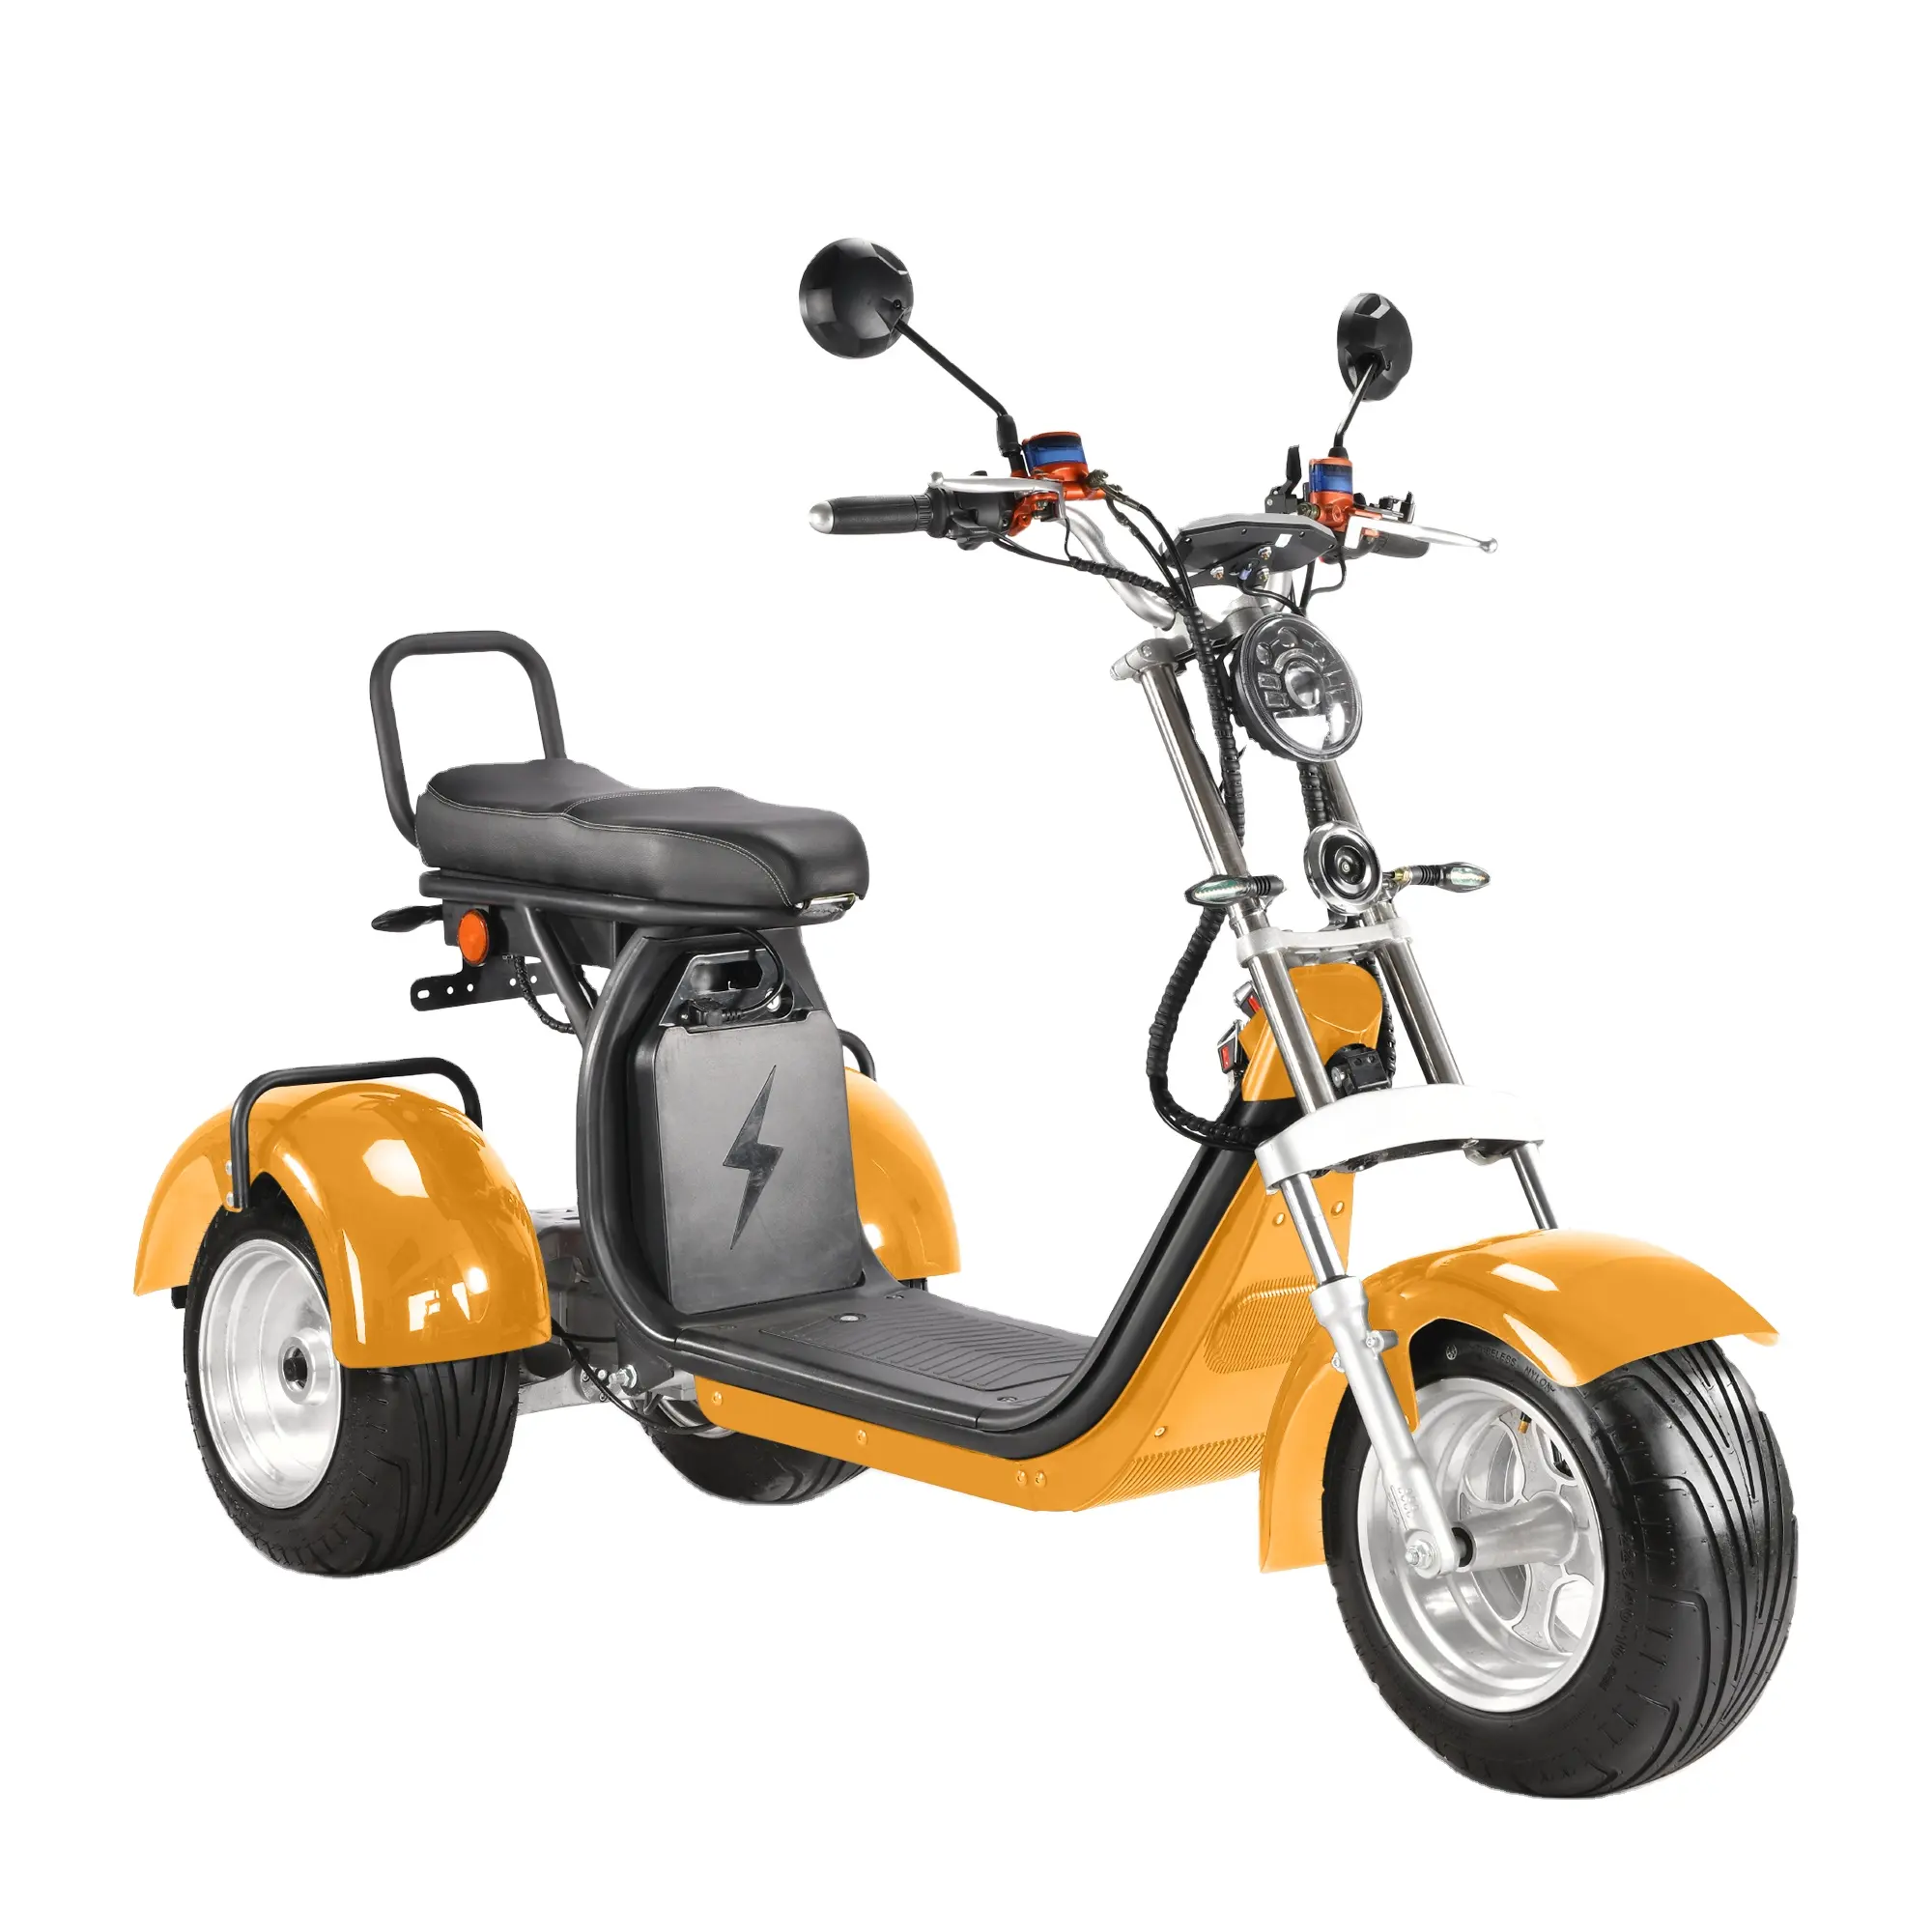 Eec/coc sertifikalı ve yurtdışı depo 3 tekerlekli citycoco elektrikli scooter yetişkin elektrikli üç tekerlekli bisiklet ile 4000W battery pil